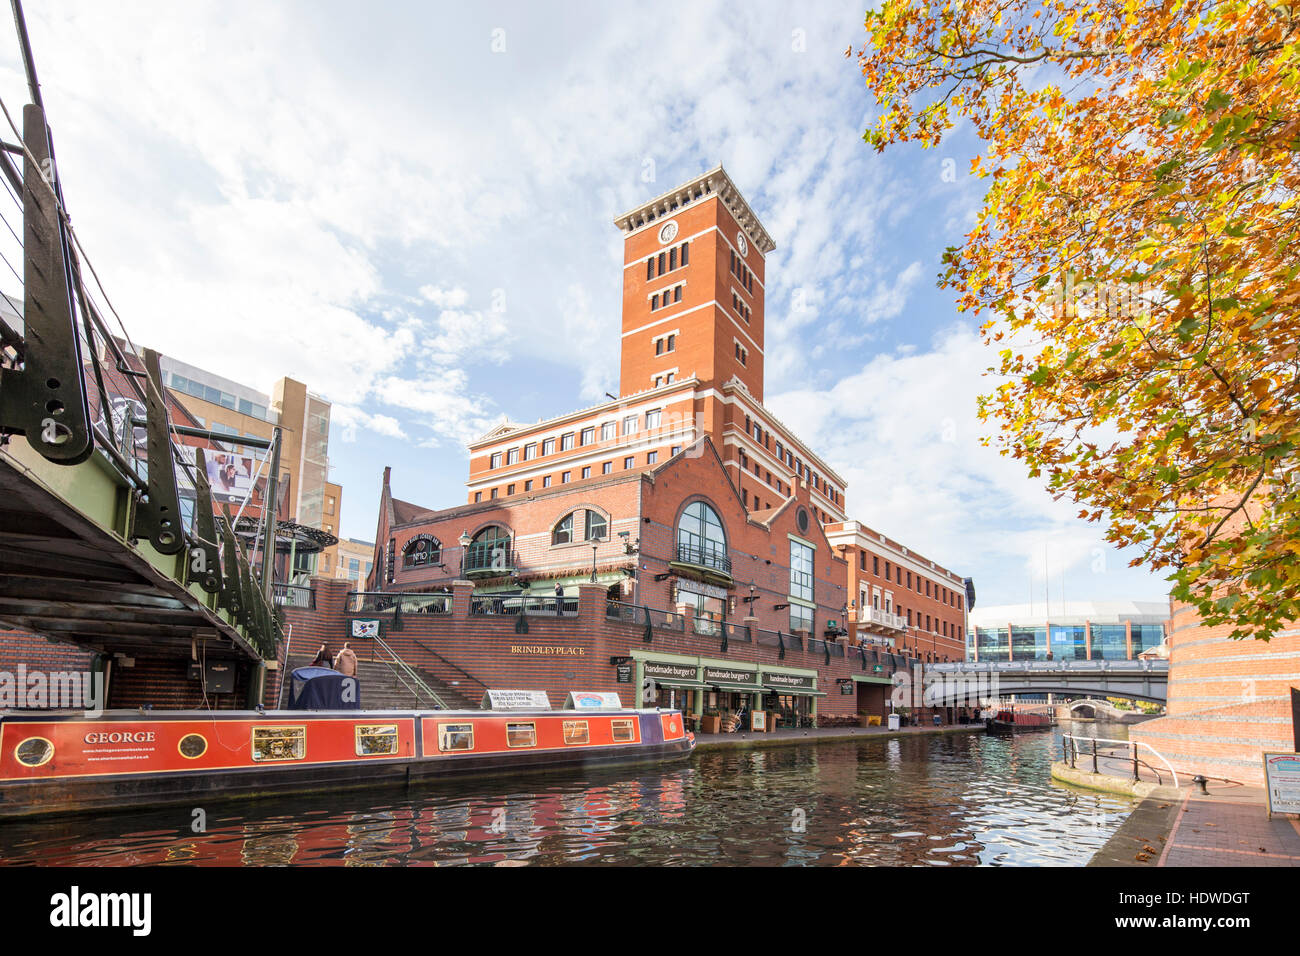 Brindley Place in autumn sunshine, Birmingham, England, UK Stock Photo